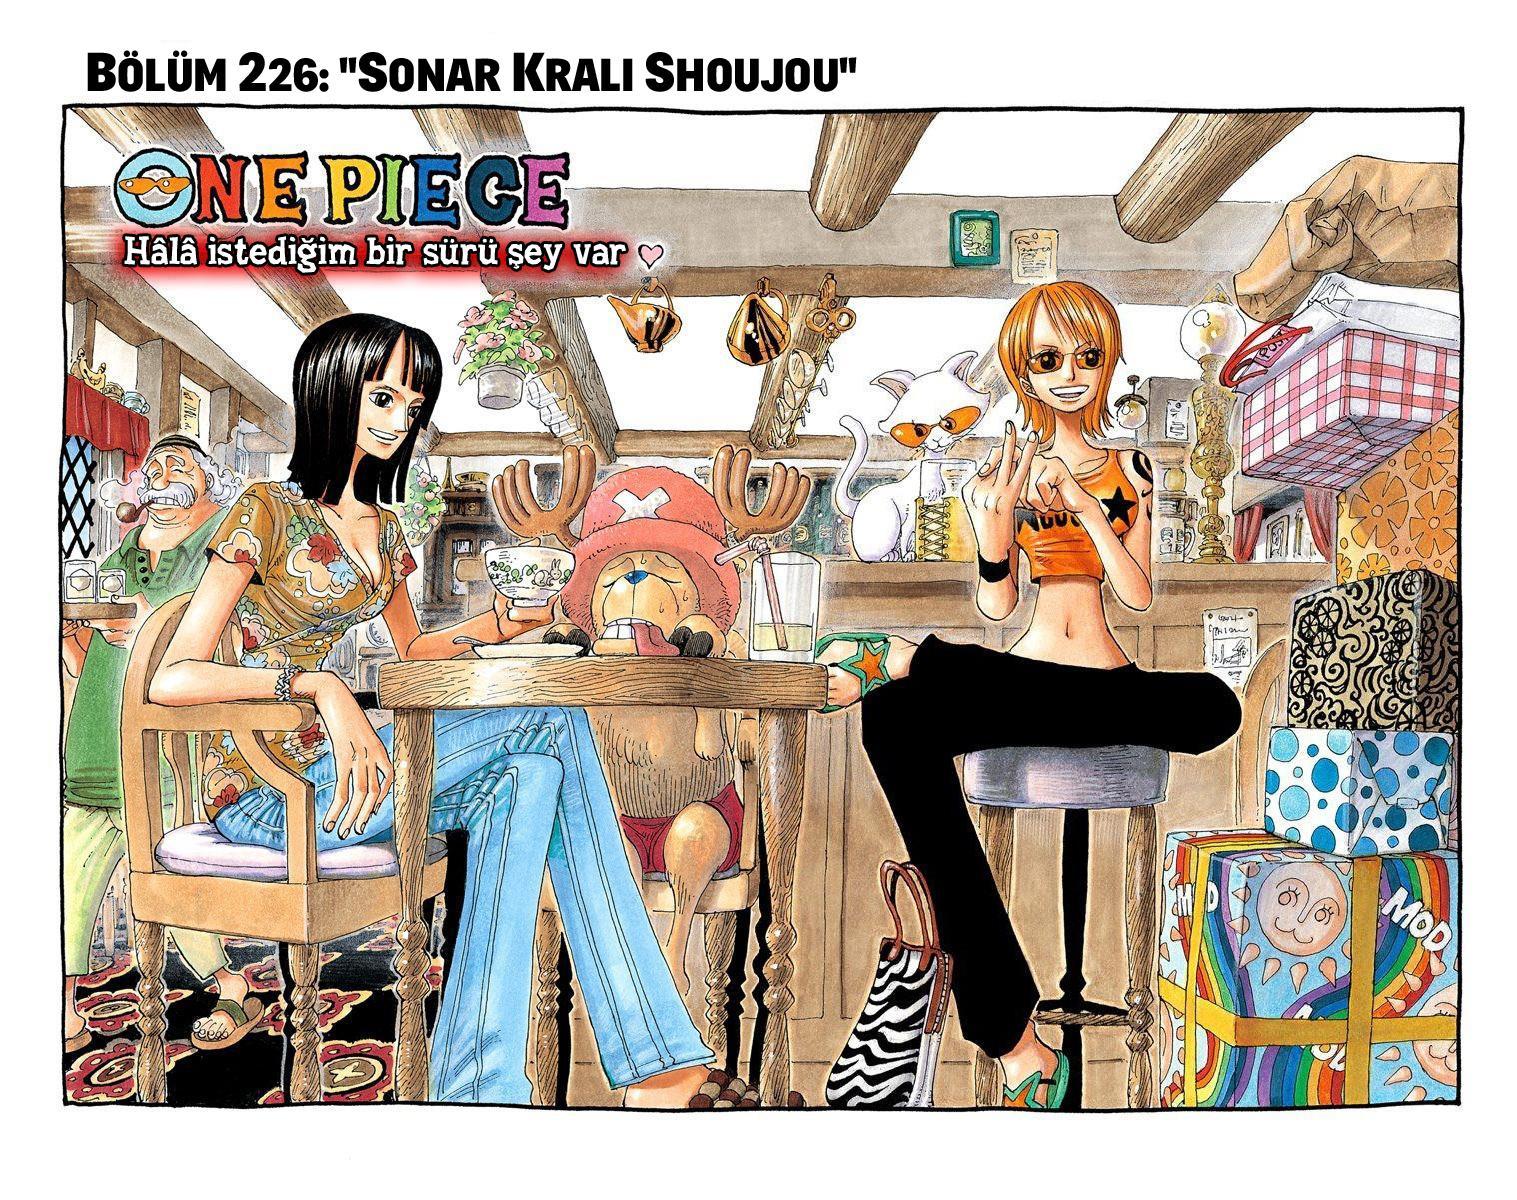 One Piece [Renkli] mangasının 0226 bölümünün 2. sayfasını okuyorsunuz.